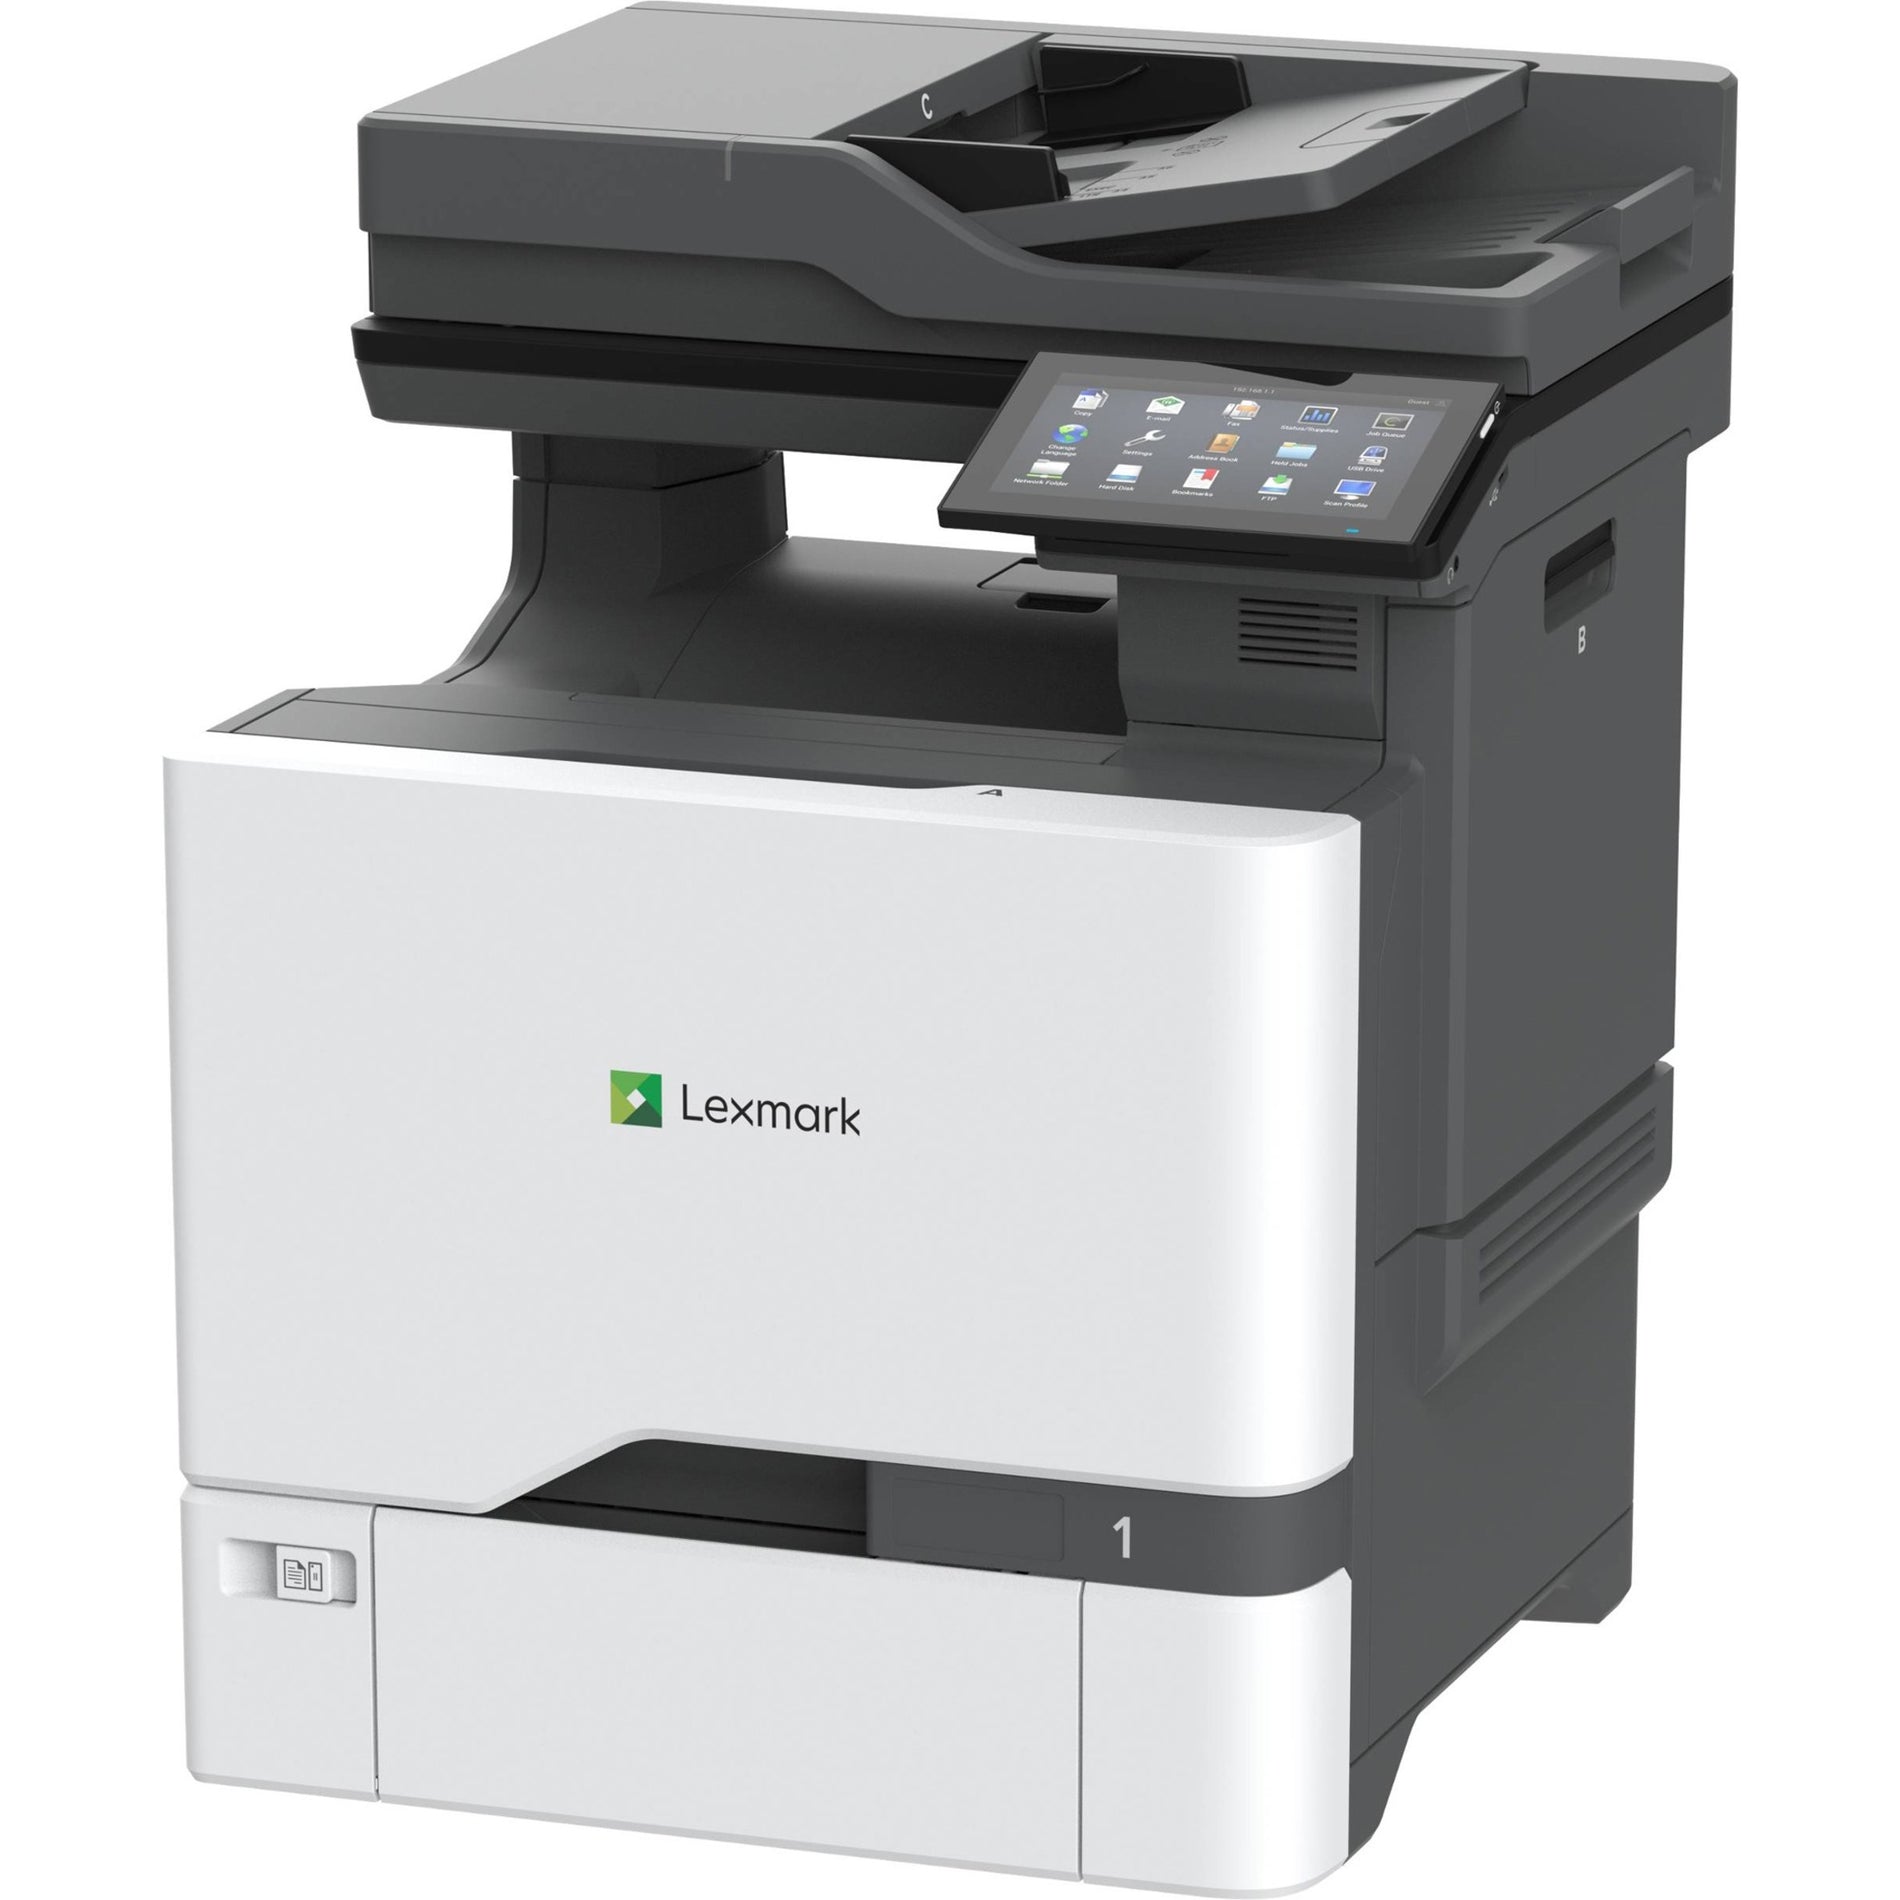 ليكسمارك 47C9500 CX730de طابعة متعددة الوظائف بتقنية الليزر اللونية، طباعة ذاتية الطباعة الثنائية التلقائية، سرعة الطباعة 42 صفحة في الدقيقة، دقة الطباعة 2400 × 600 نقطة في البوصة